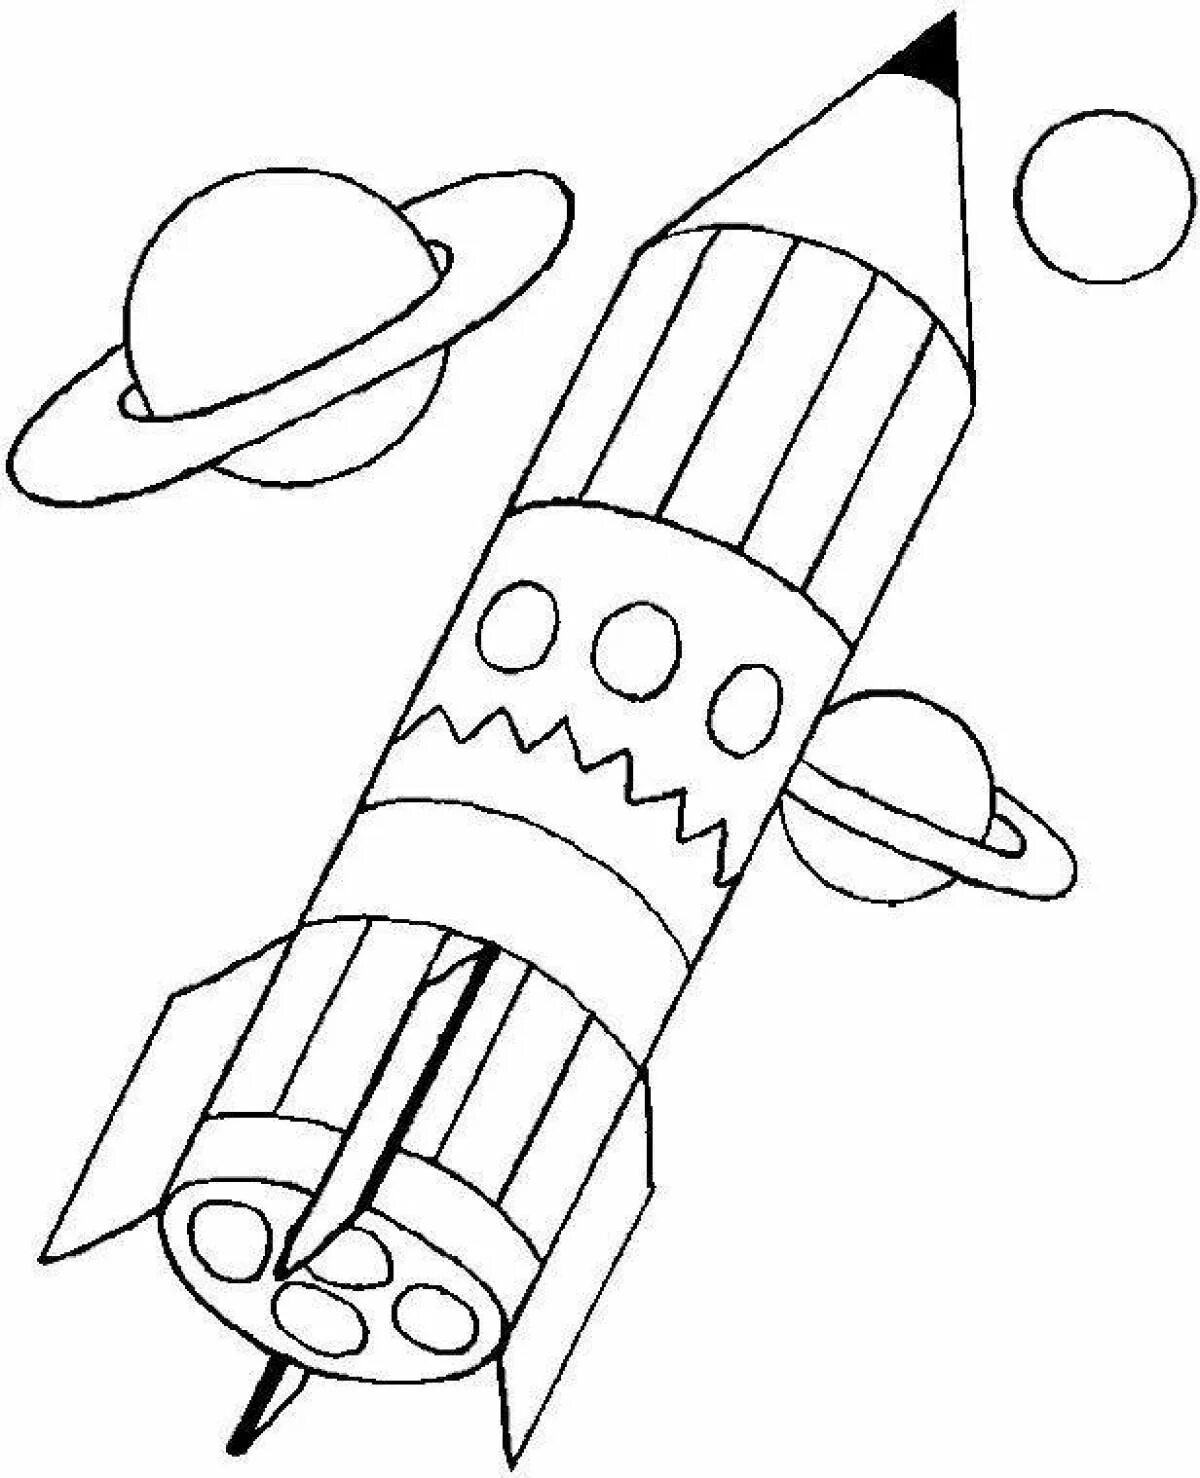 Ракета раскрасить. Ракета раскраска. Ракета раскраска для детей. Космическая ракета раскраска. Ракета эскиз.